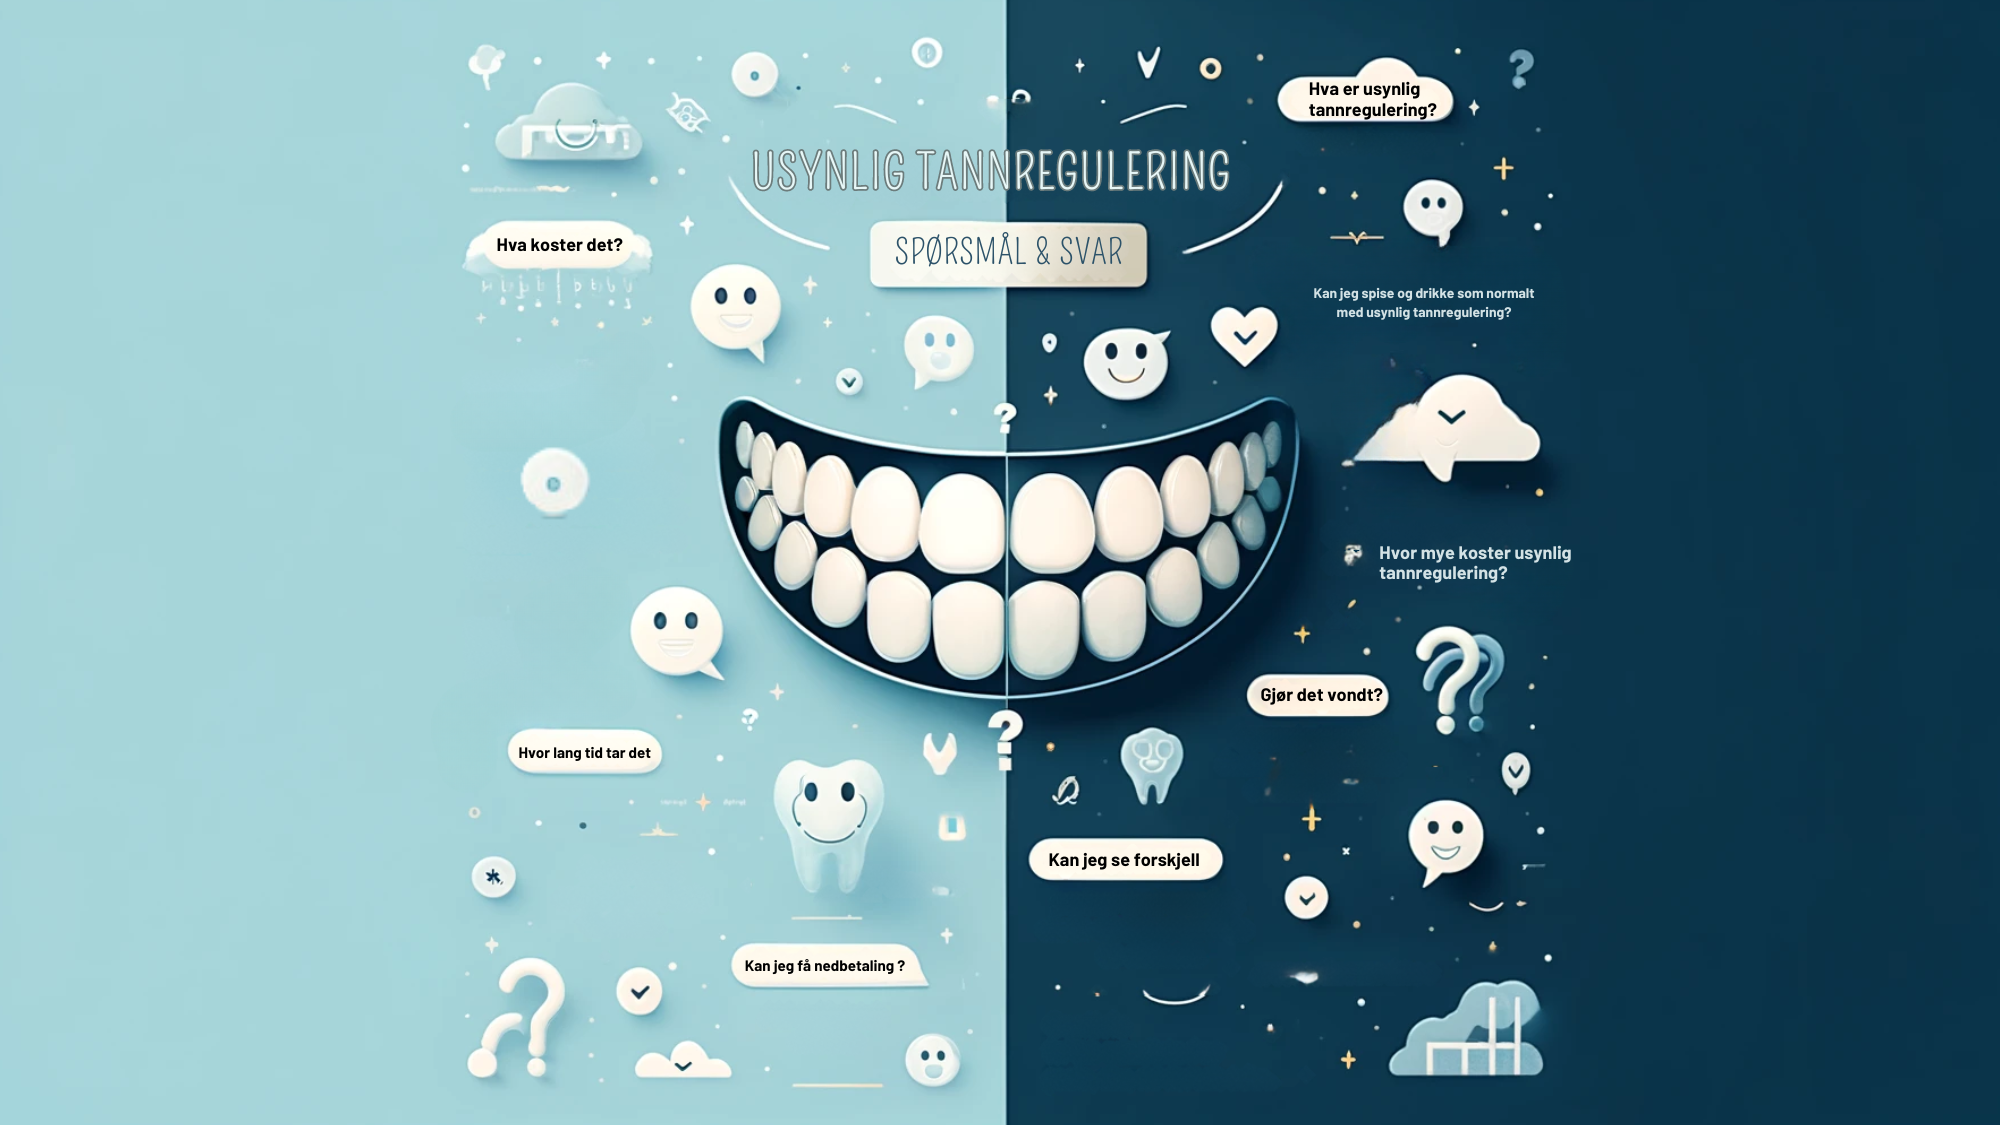 Informasjonsgrafikk om usynlig tannregulering, med spørsmål og svar, i en delt blå og hvit design.